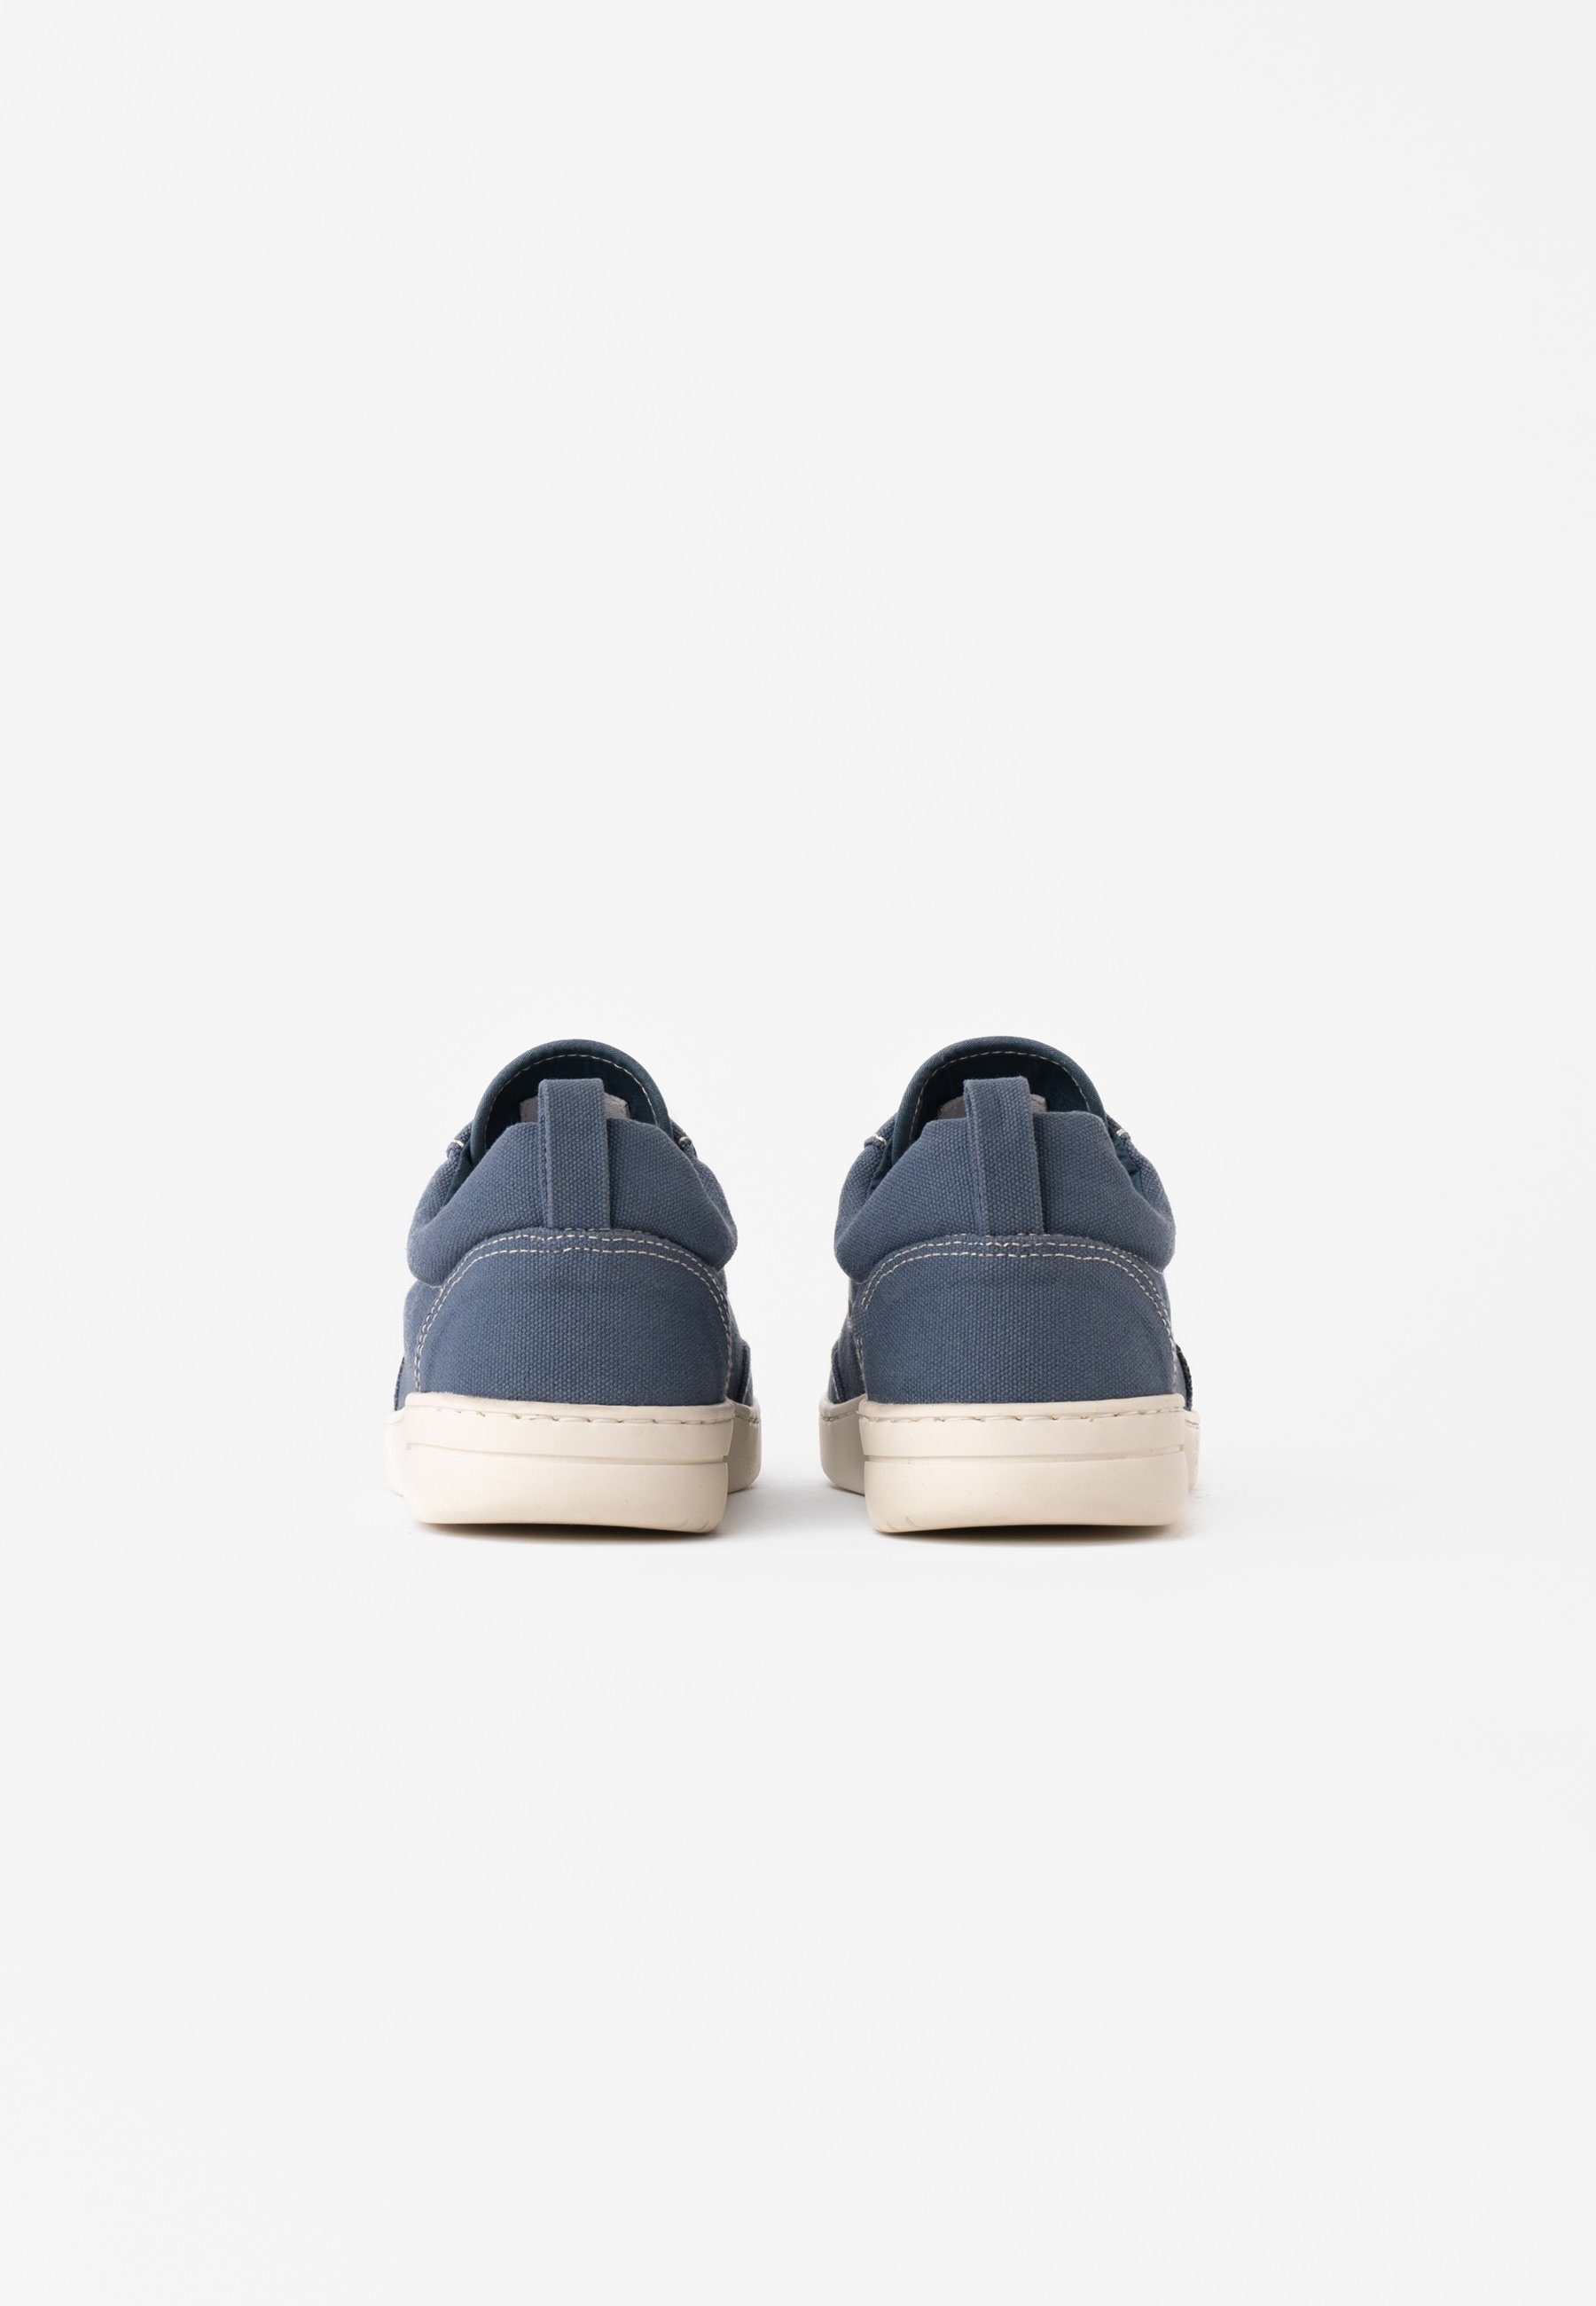 MELA Damen Sneaker YALA / Schnürsenkel dusty zusätzlichem blue inklusive weiß Sneaker Paar